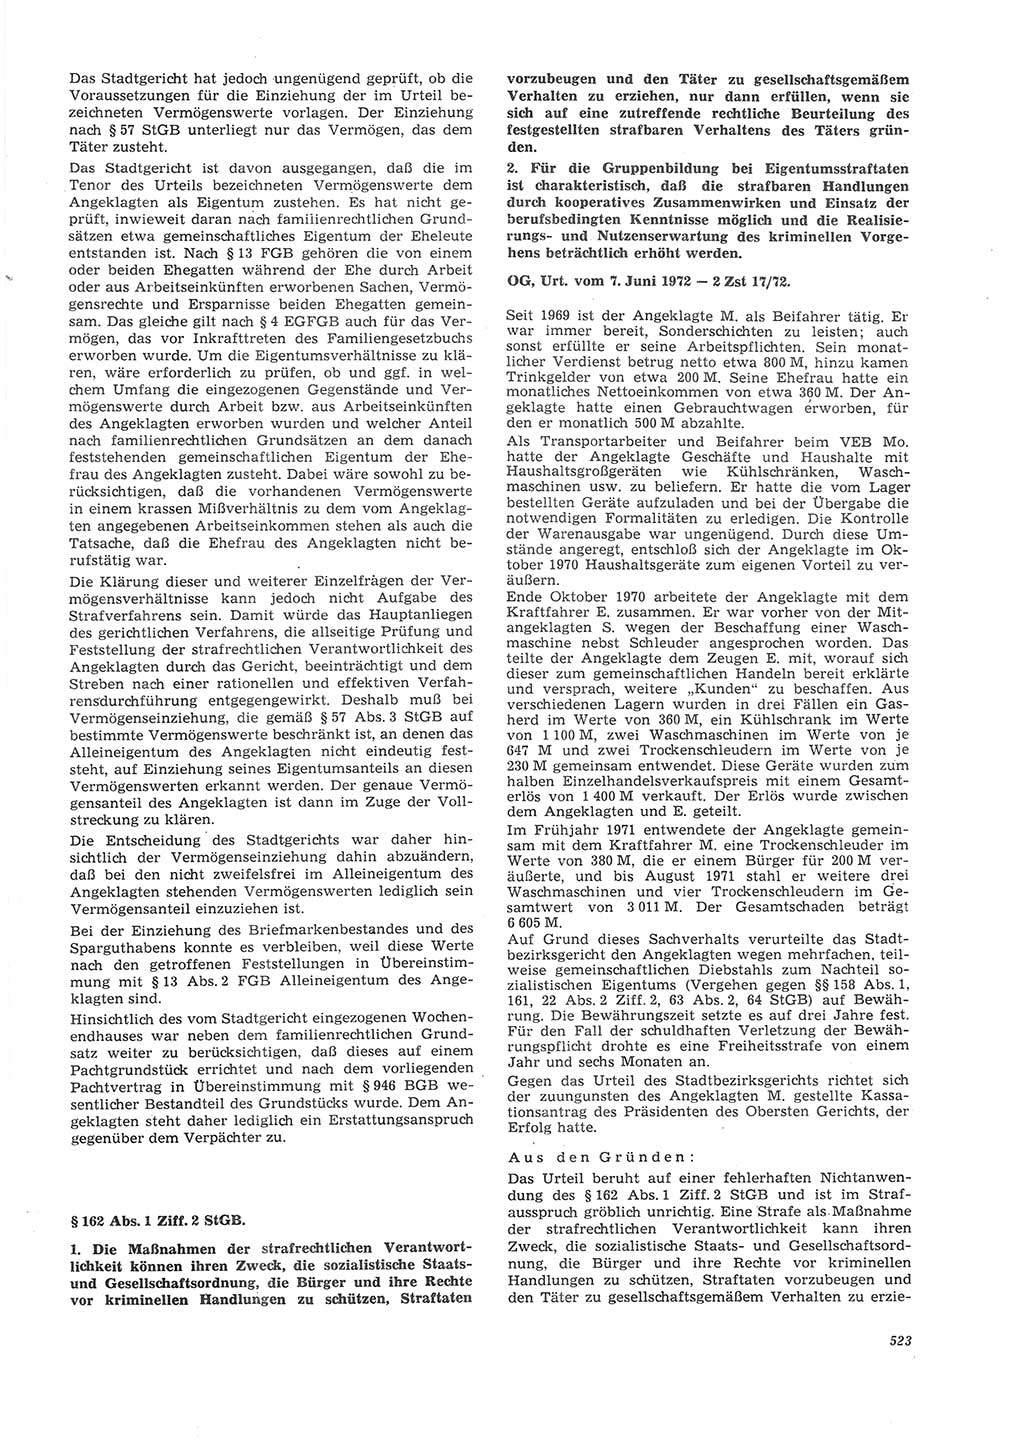 Neue Justiz (NJ), Zeitschrift für Recht und Rechtswissenschaft [Deutsche Demokratische Republik (DDR)], 26. Jahrgang 1972, Seite 523 (NJ DDR 1972, S. 523)